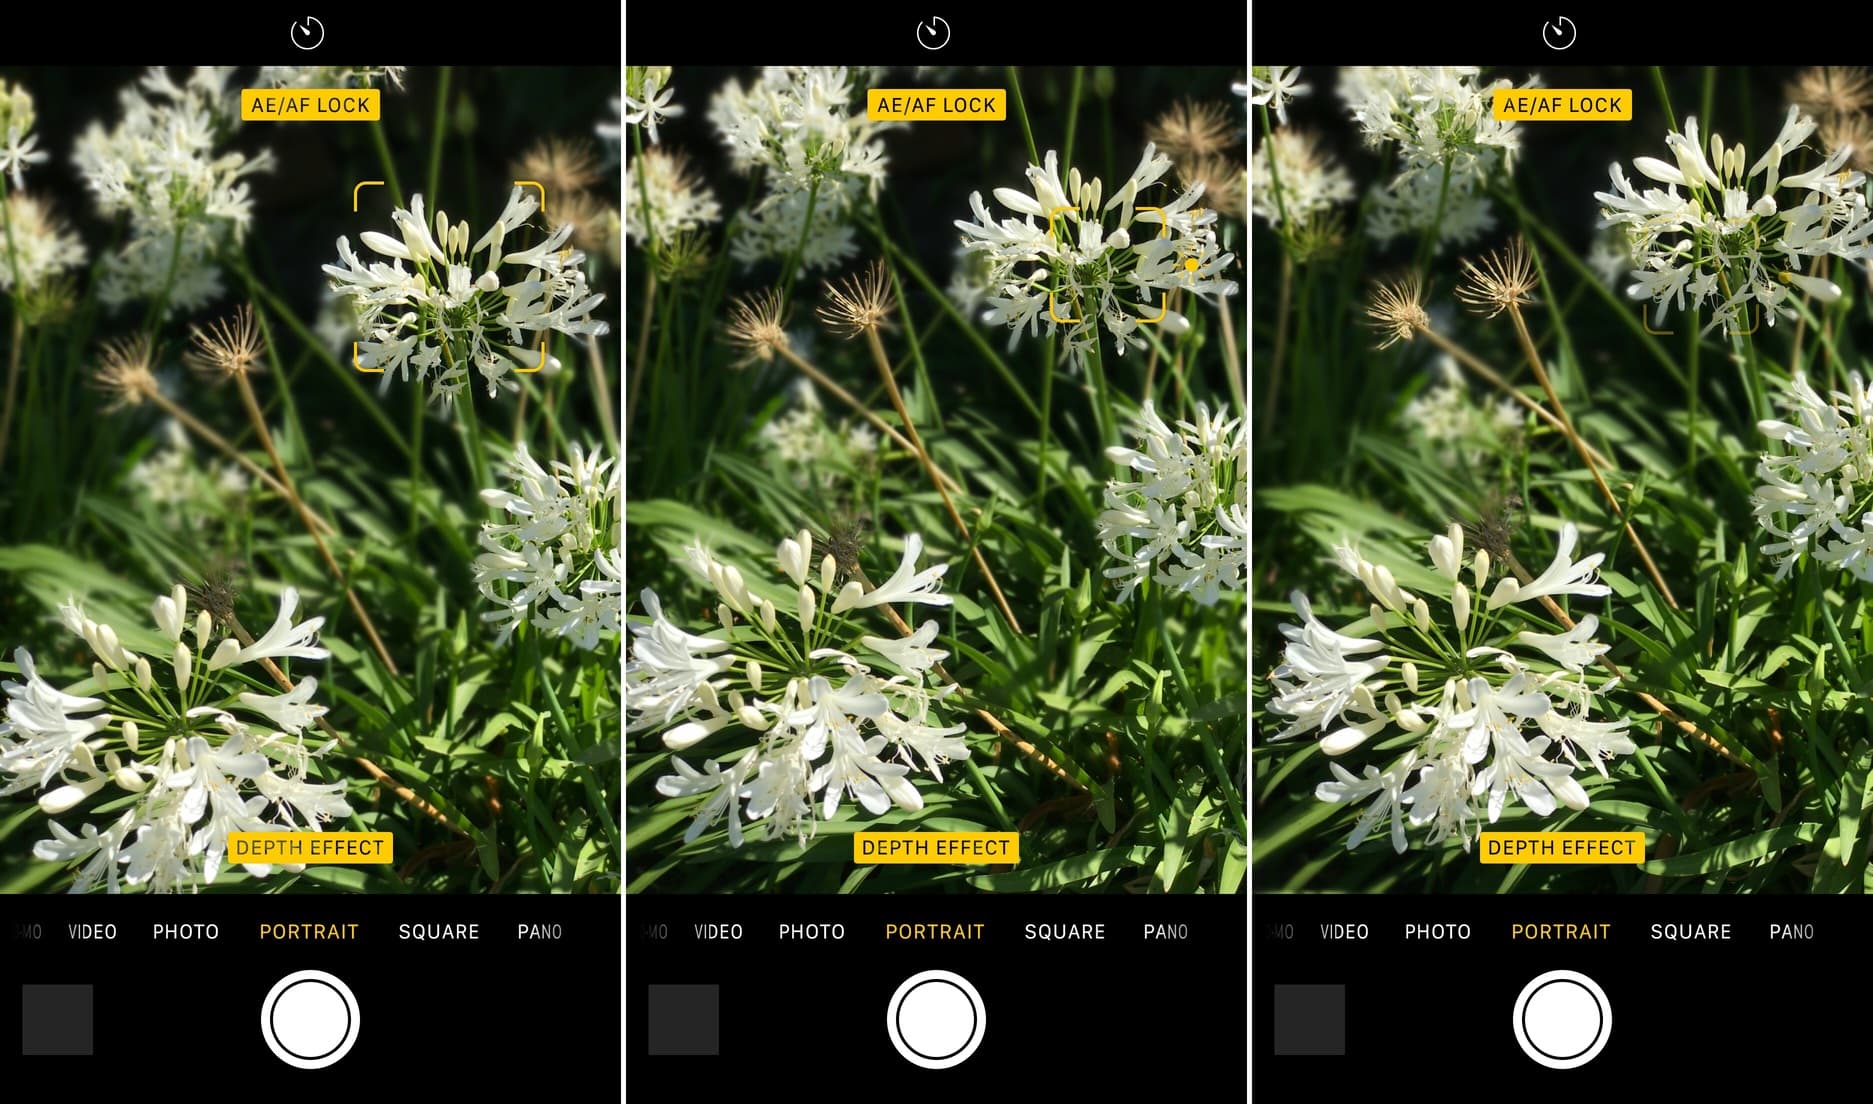 Auto Exposure or Auto Focus Lock in Portrait mode on iPhone